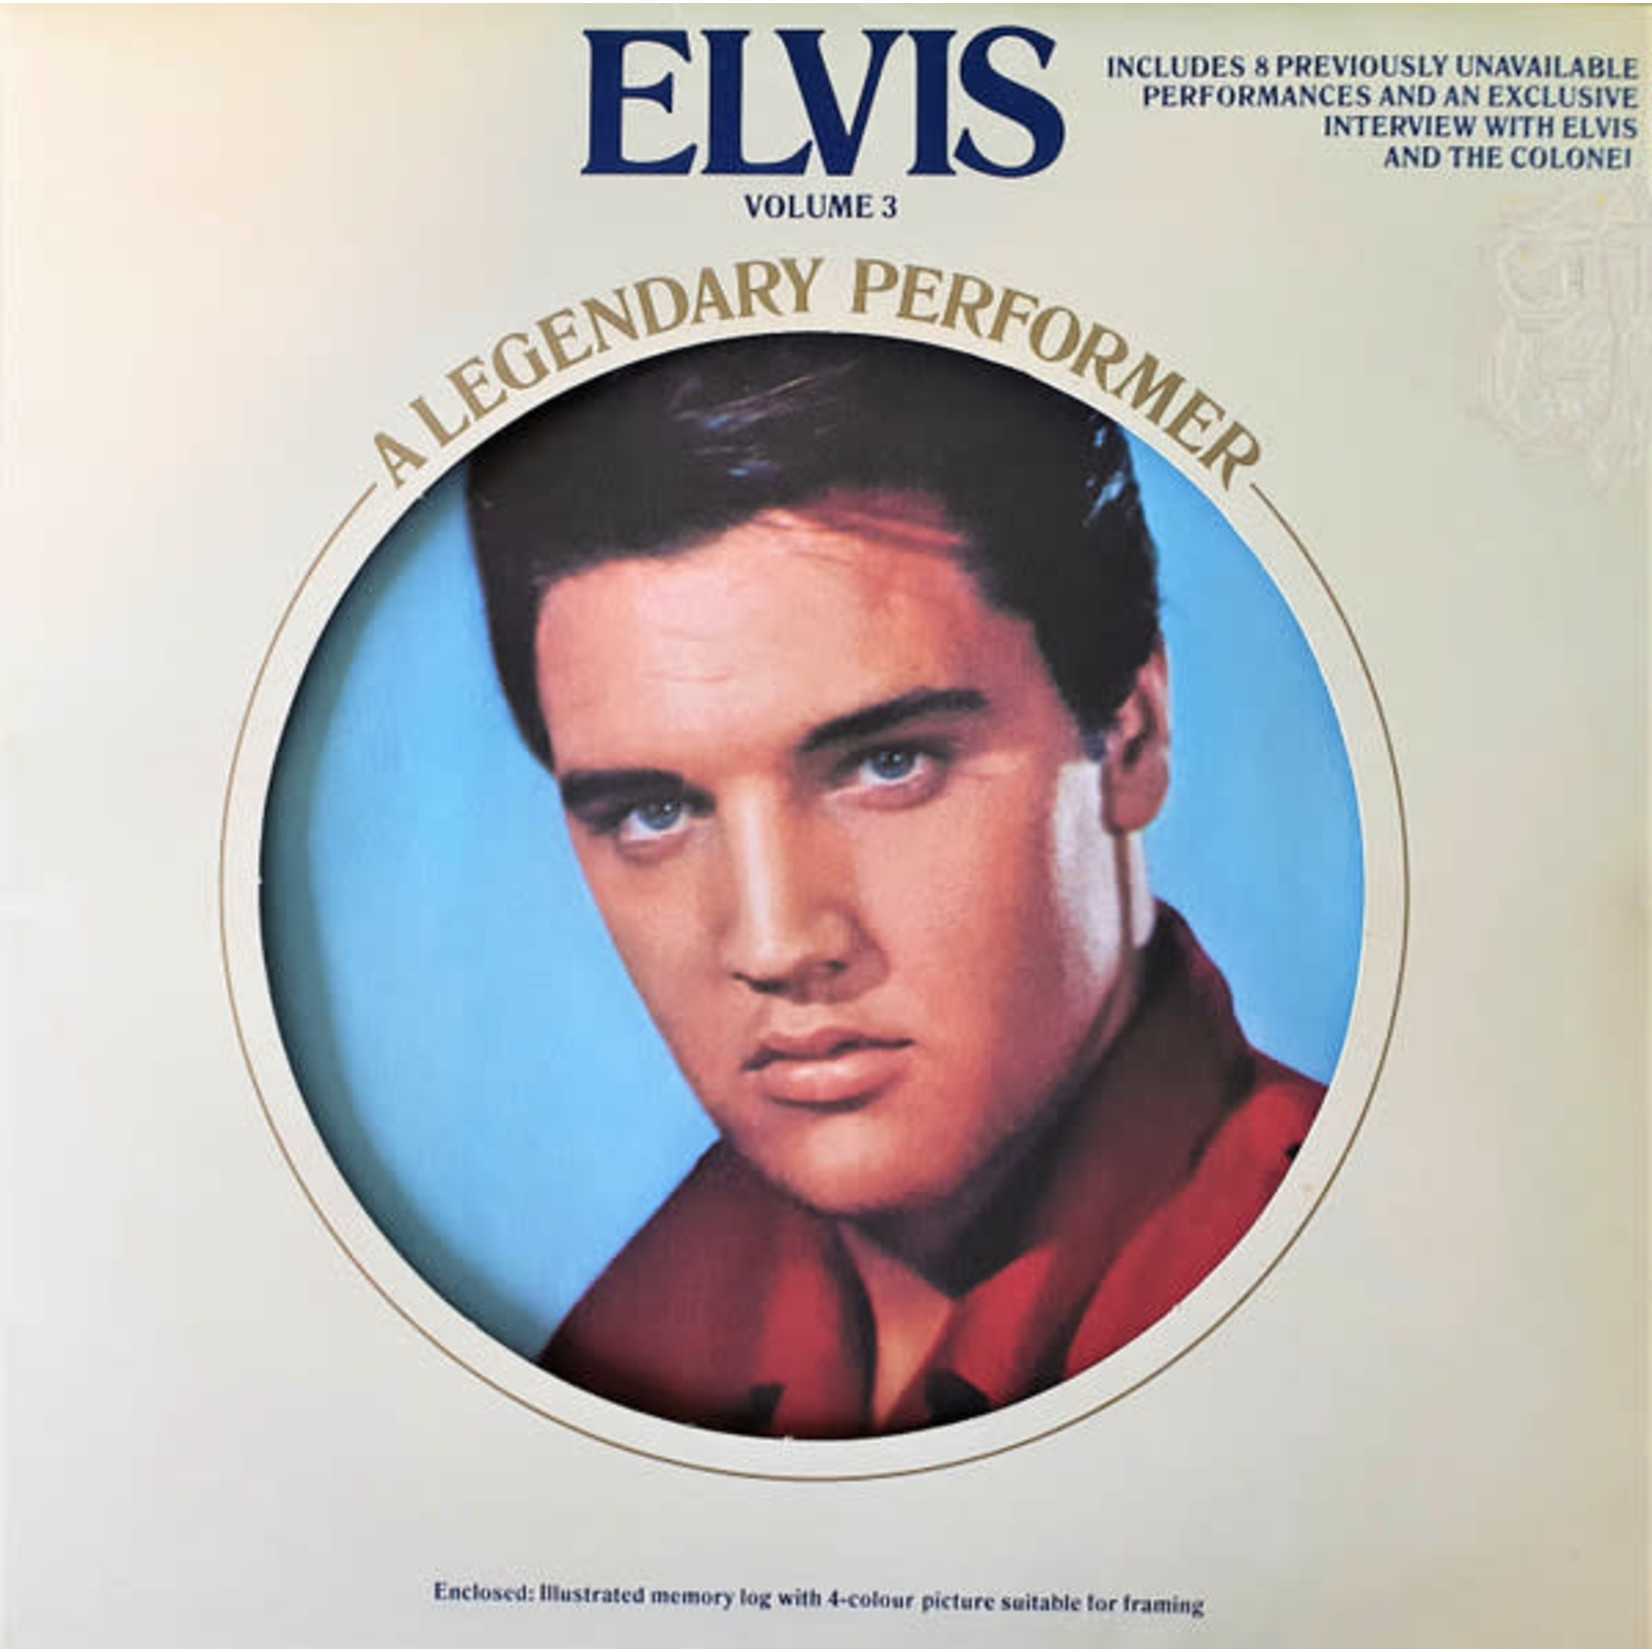 [Vintage] Elvis Presley - Legendary Performer Volume 3 (picture disc)